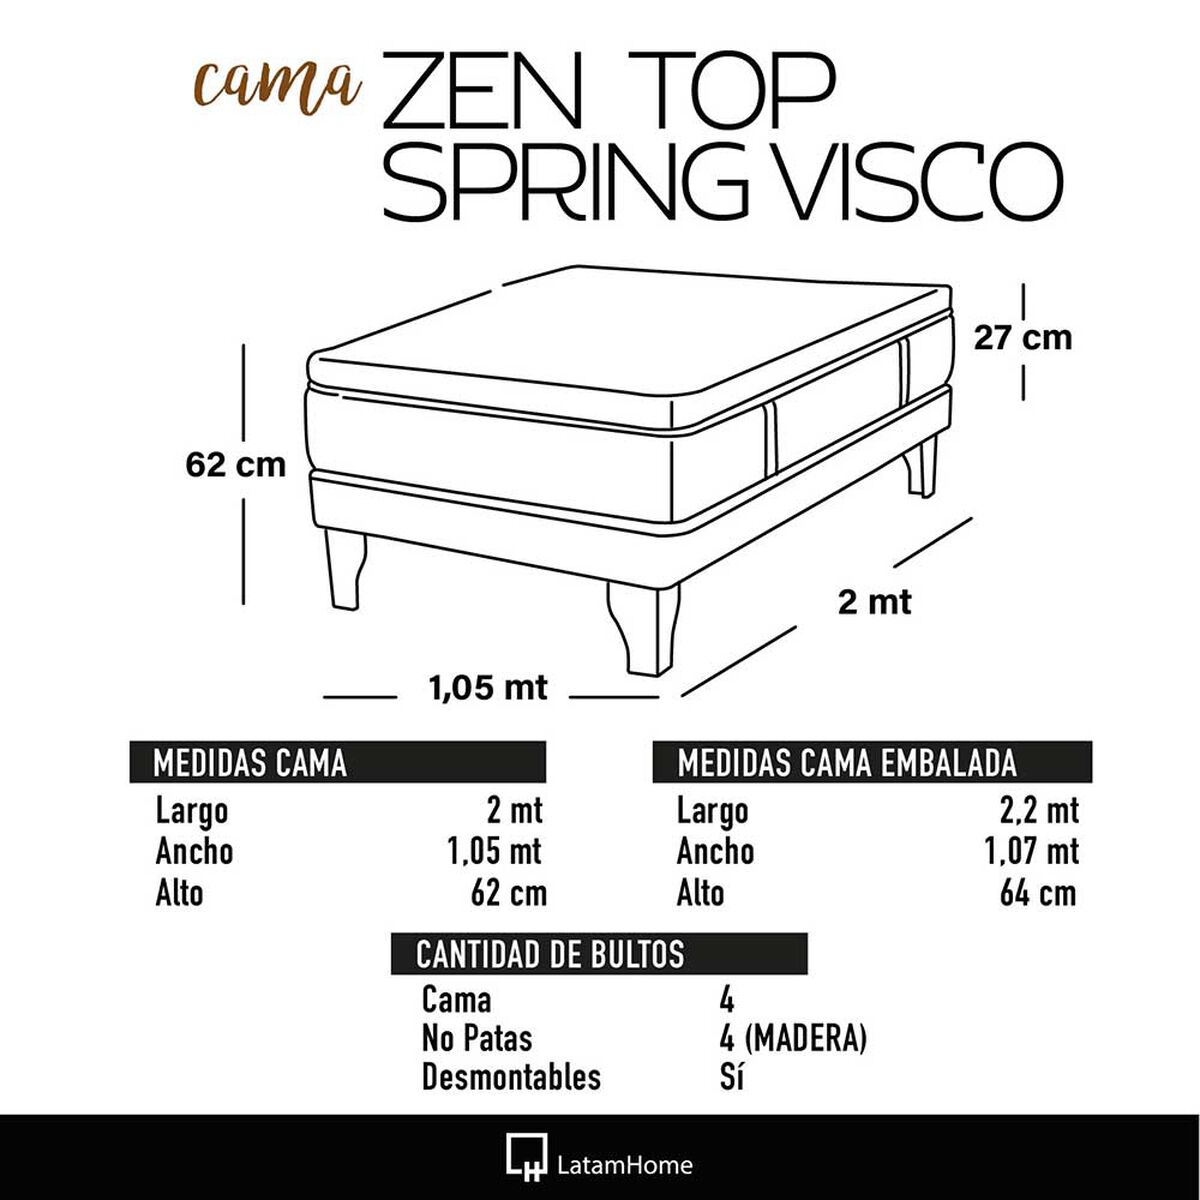 Cama Europea Latam Home 1,5 Plazas Zen Top Spring Visco Velvet Chocolate